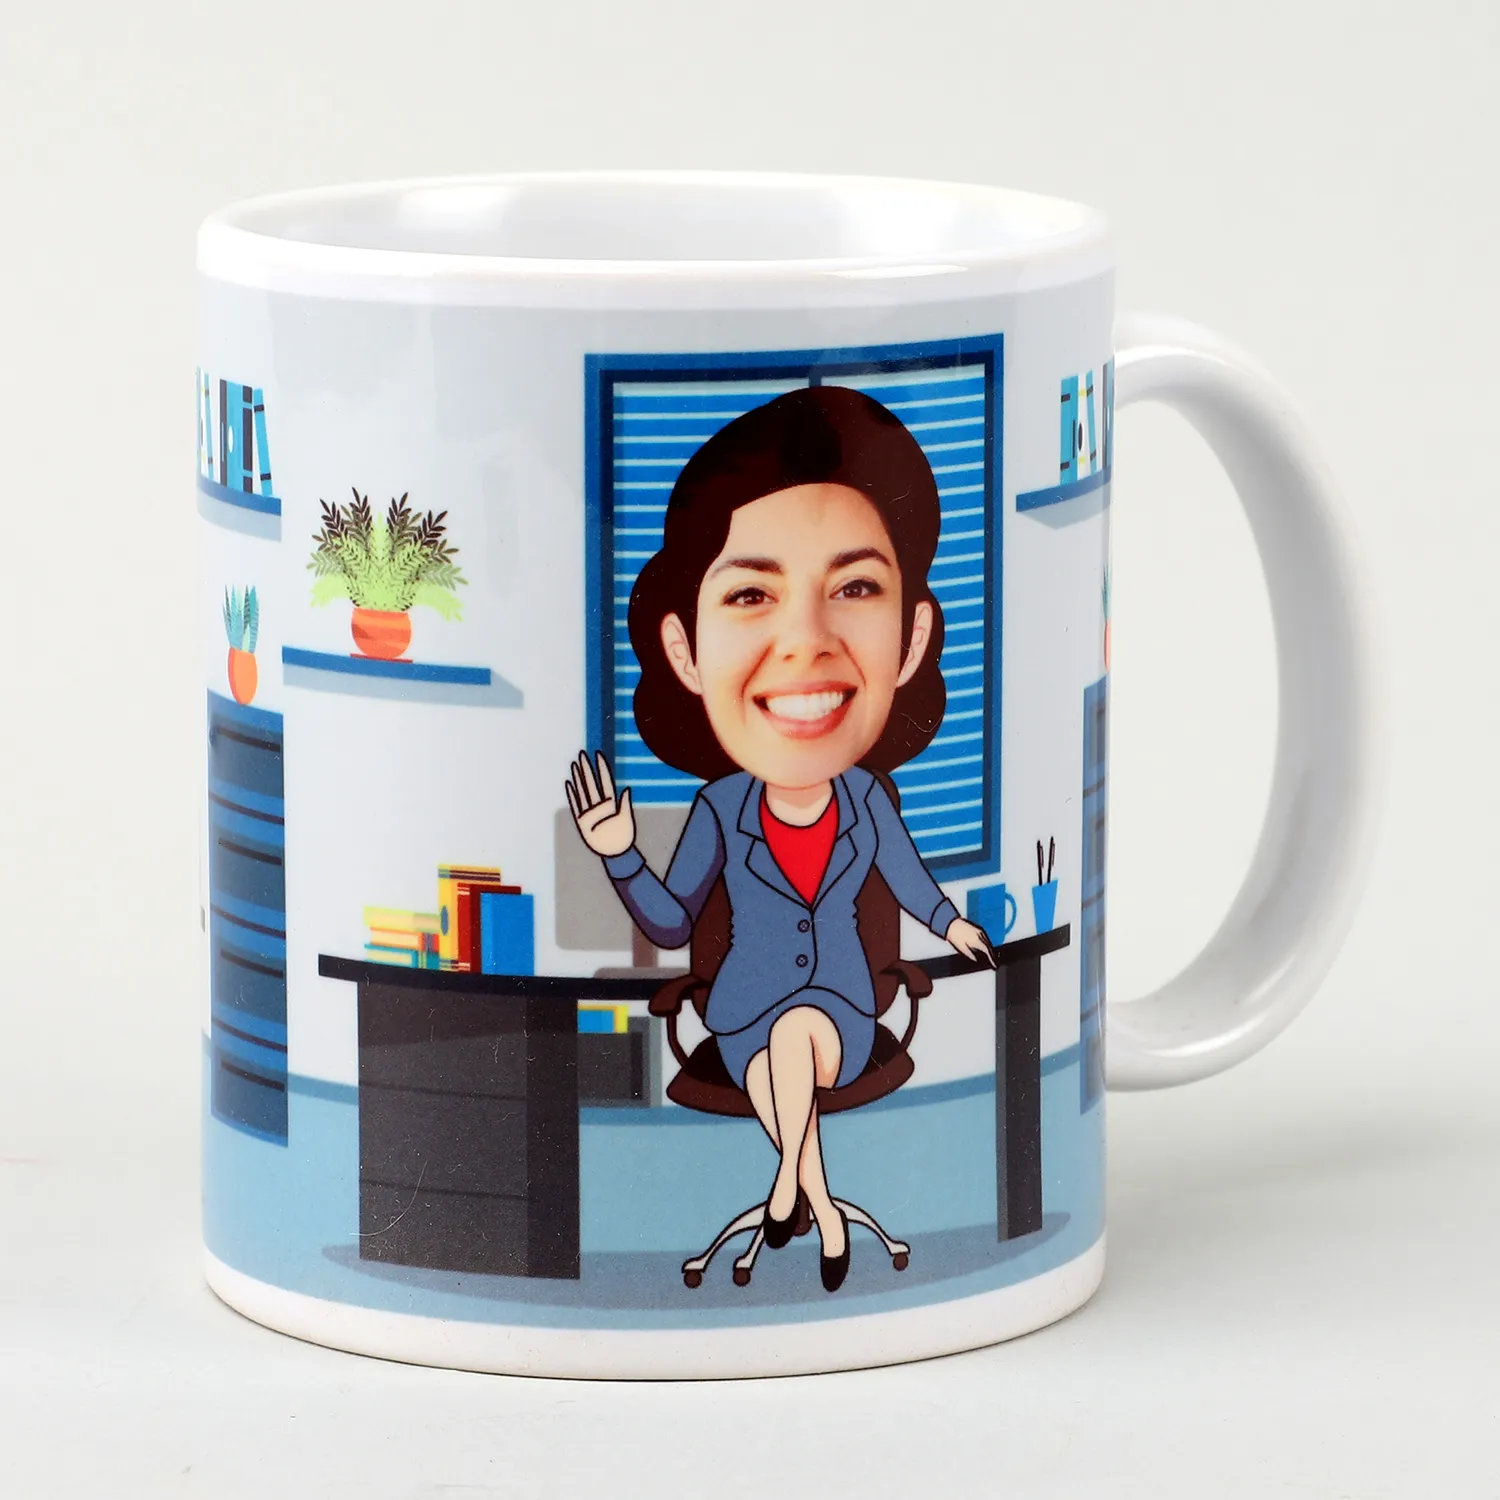 Personalised Office Mom Caricature Mug